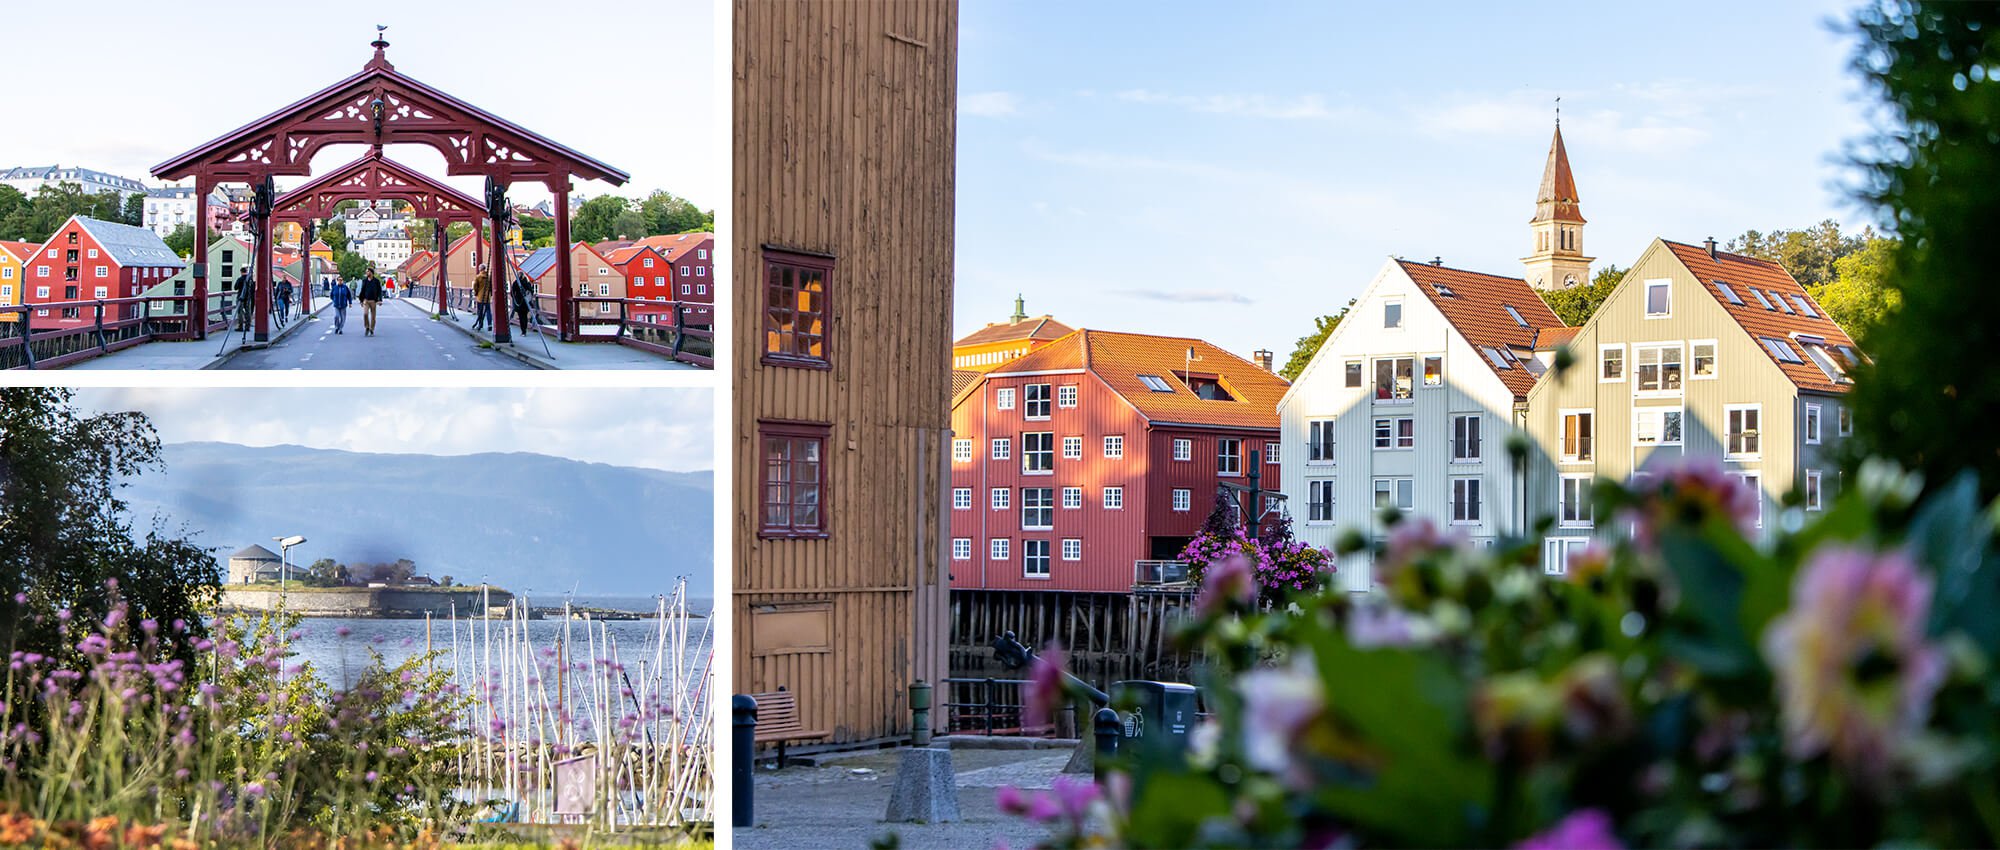 Workation in Norwegen, die Innenstadt von Trondheim mit der alten Brücke (Gamle Bro) und die Holzhäuser von Trondheim am Wasser